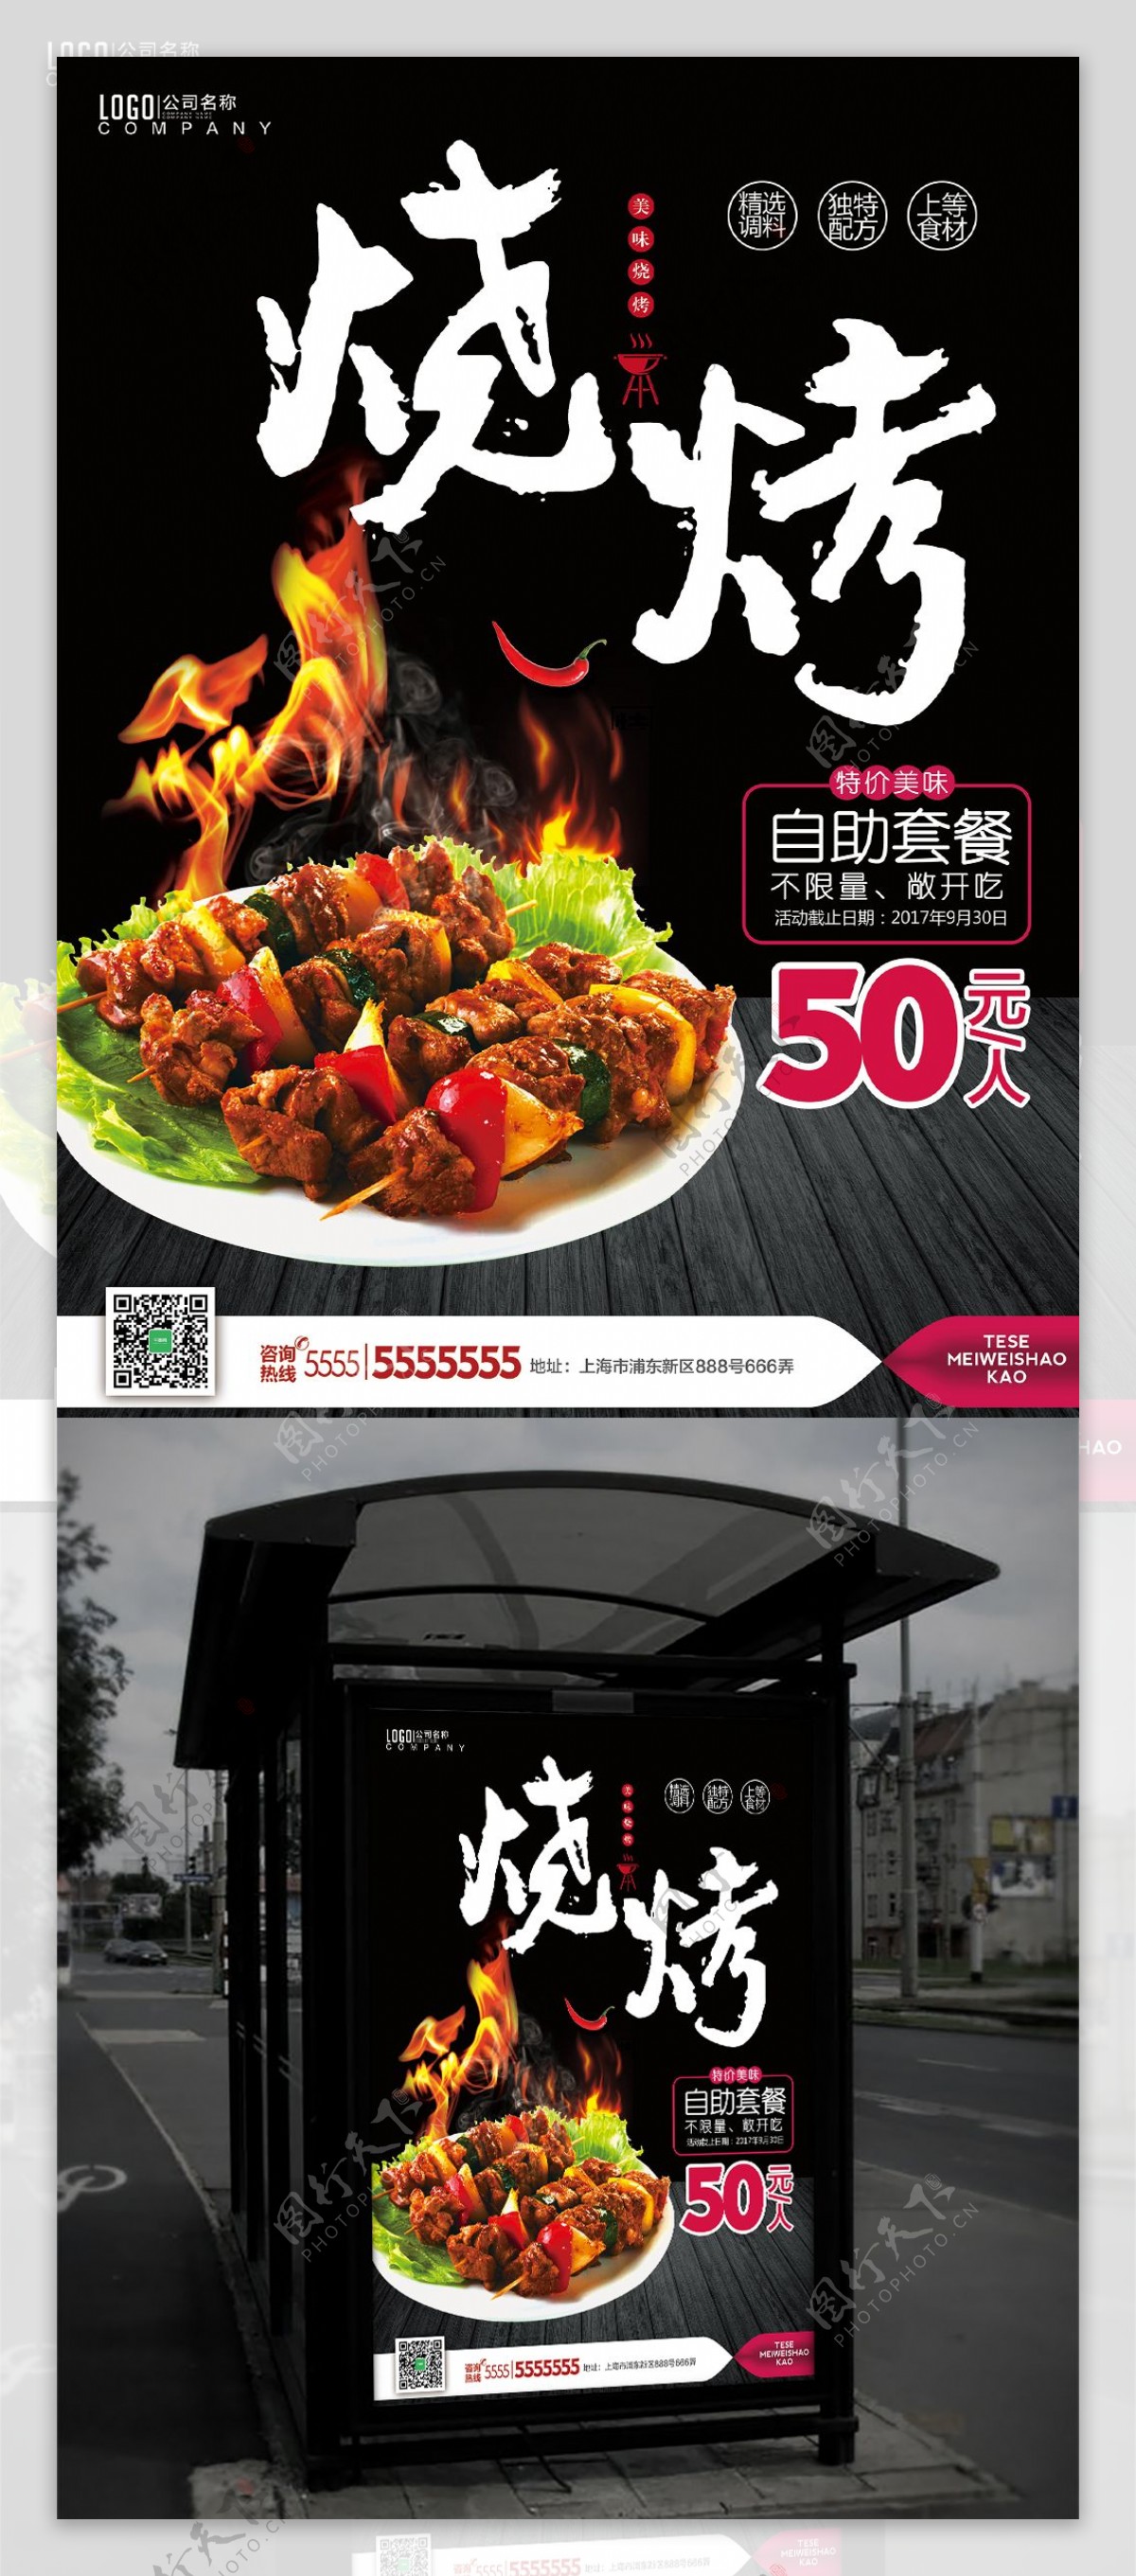 美味烧烤火焰烤肉自助套餐活动促销海报